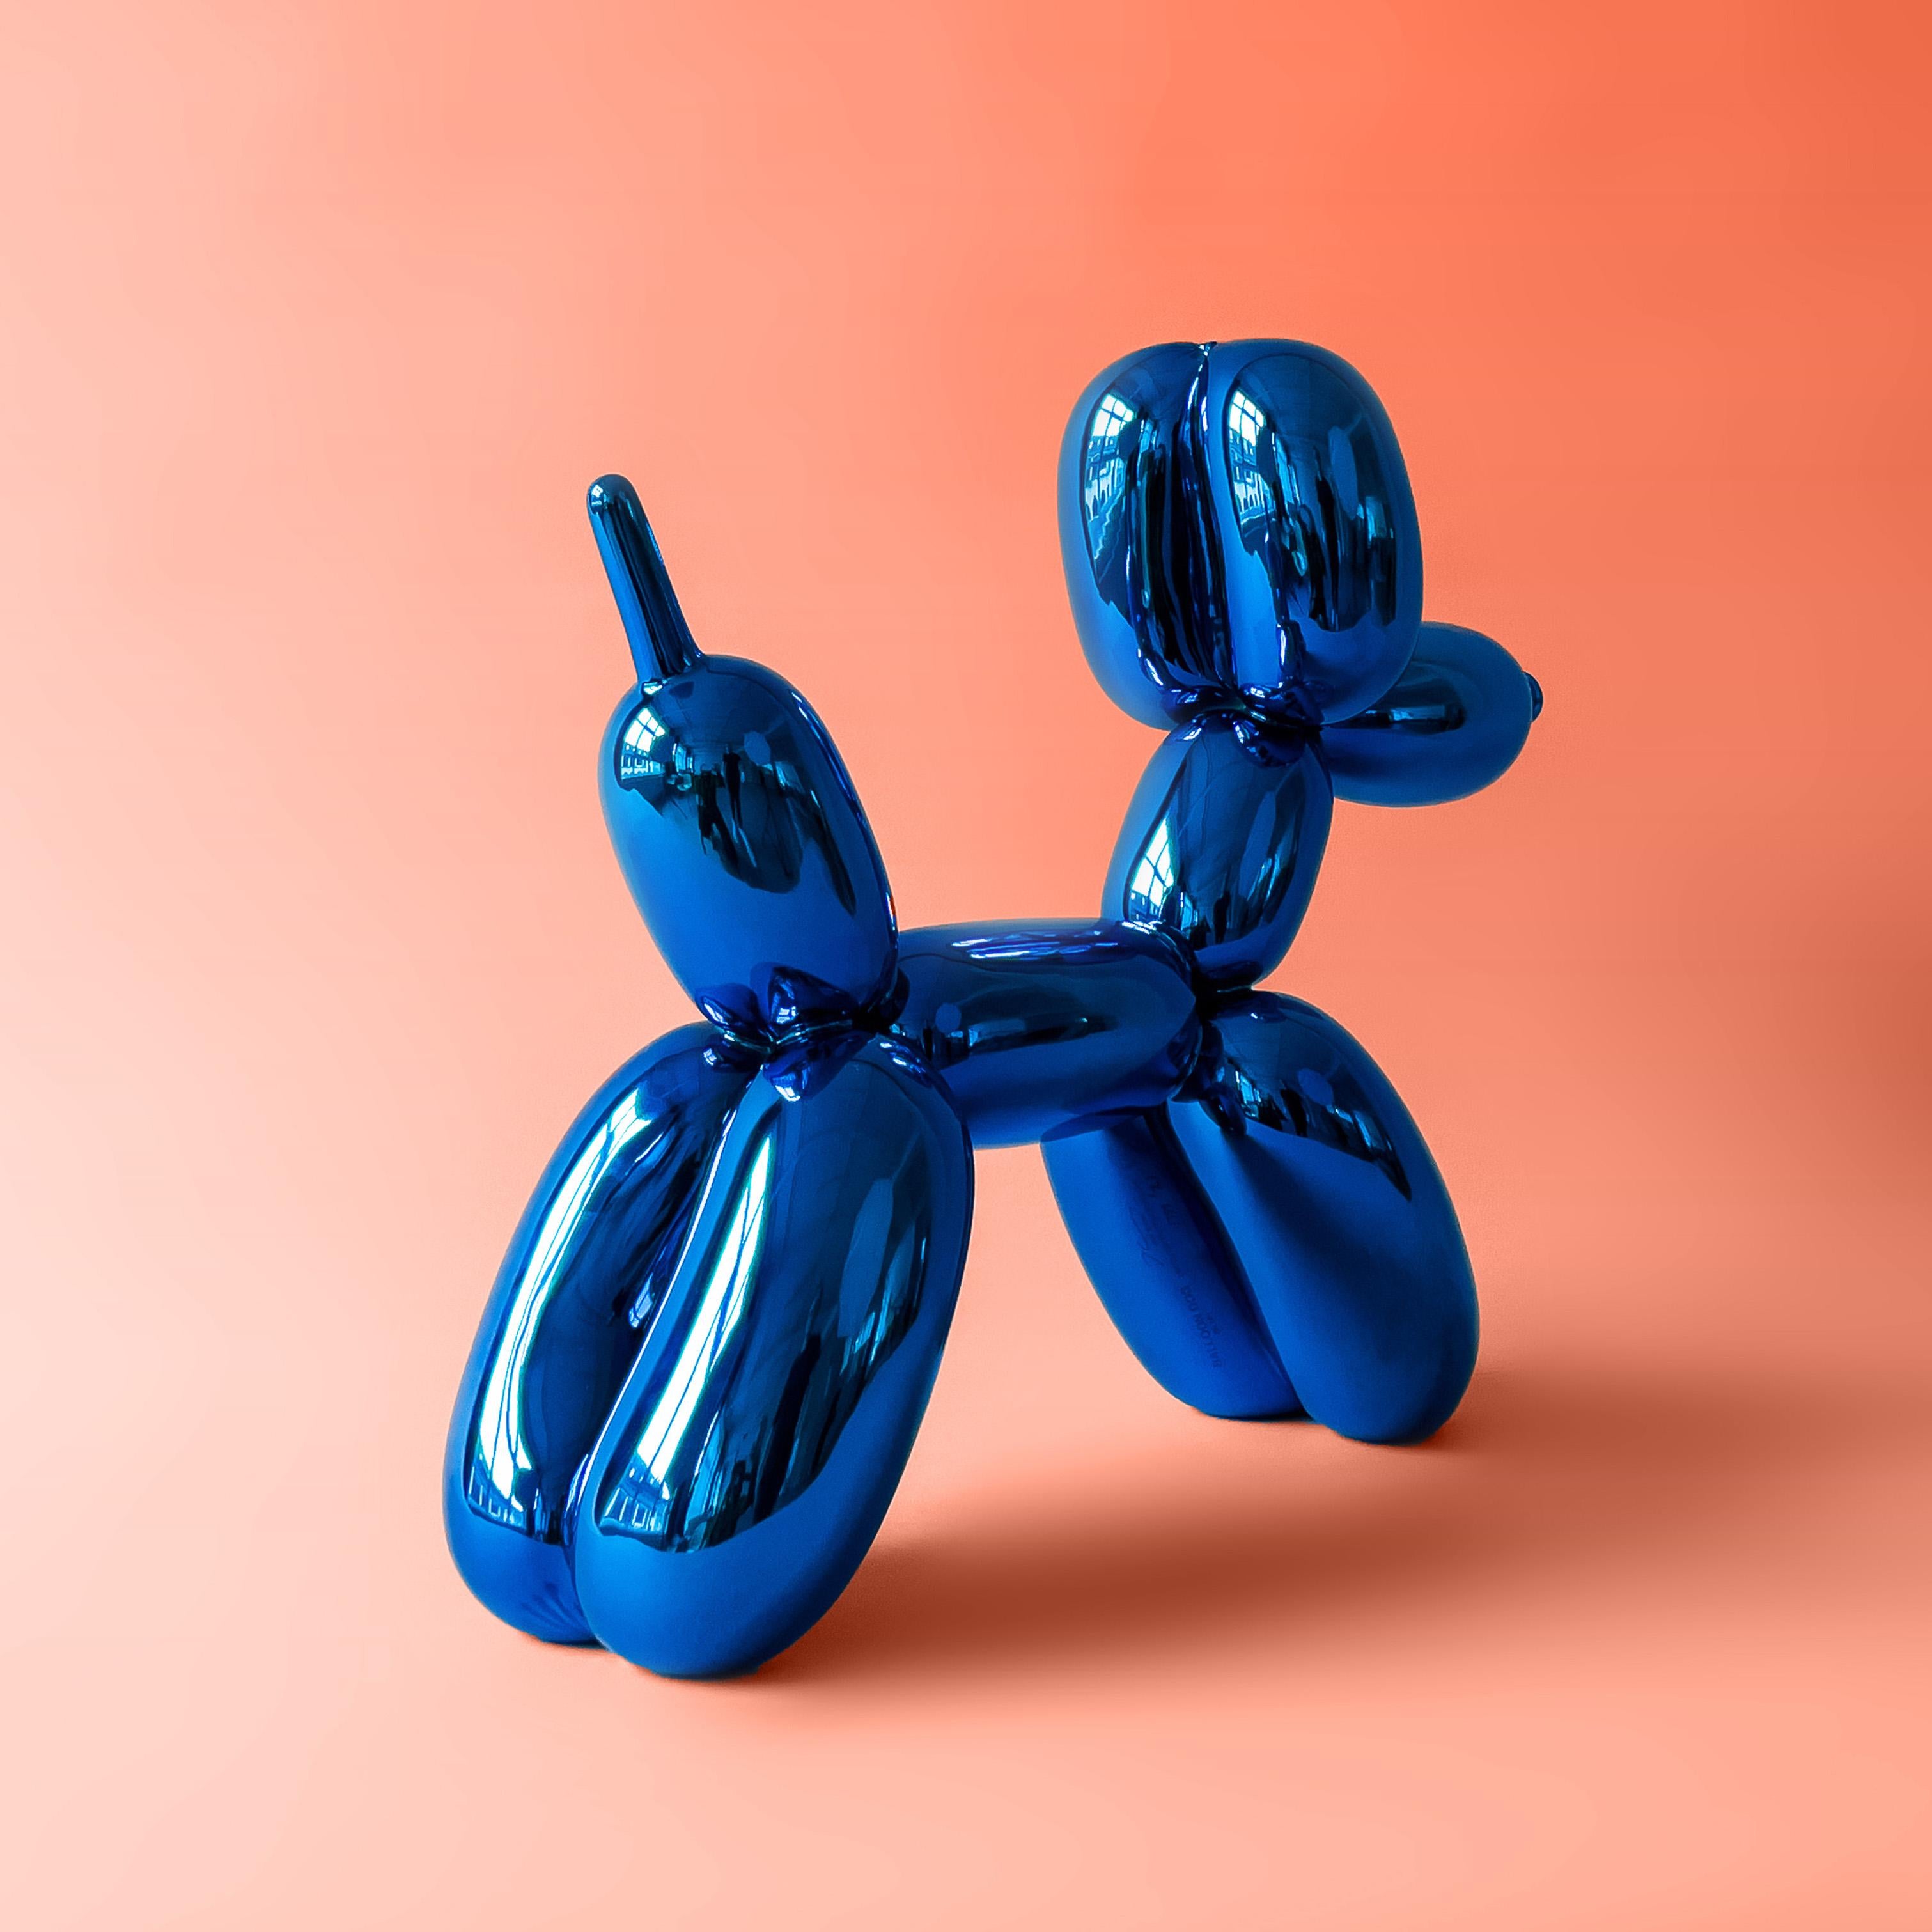 In Koons' Händen werden selbst die vertrautesten, alltäglichen Gegenstände über das Alltägliche hinaus zu wahren Ikonen, die das Wesen der amerikanischen Populärkultur verkörpern.

Jeff Koons
Balloon Dog (Blue) - Jeff Koons, 21. Jahrhundert,